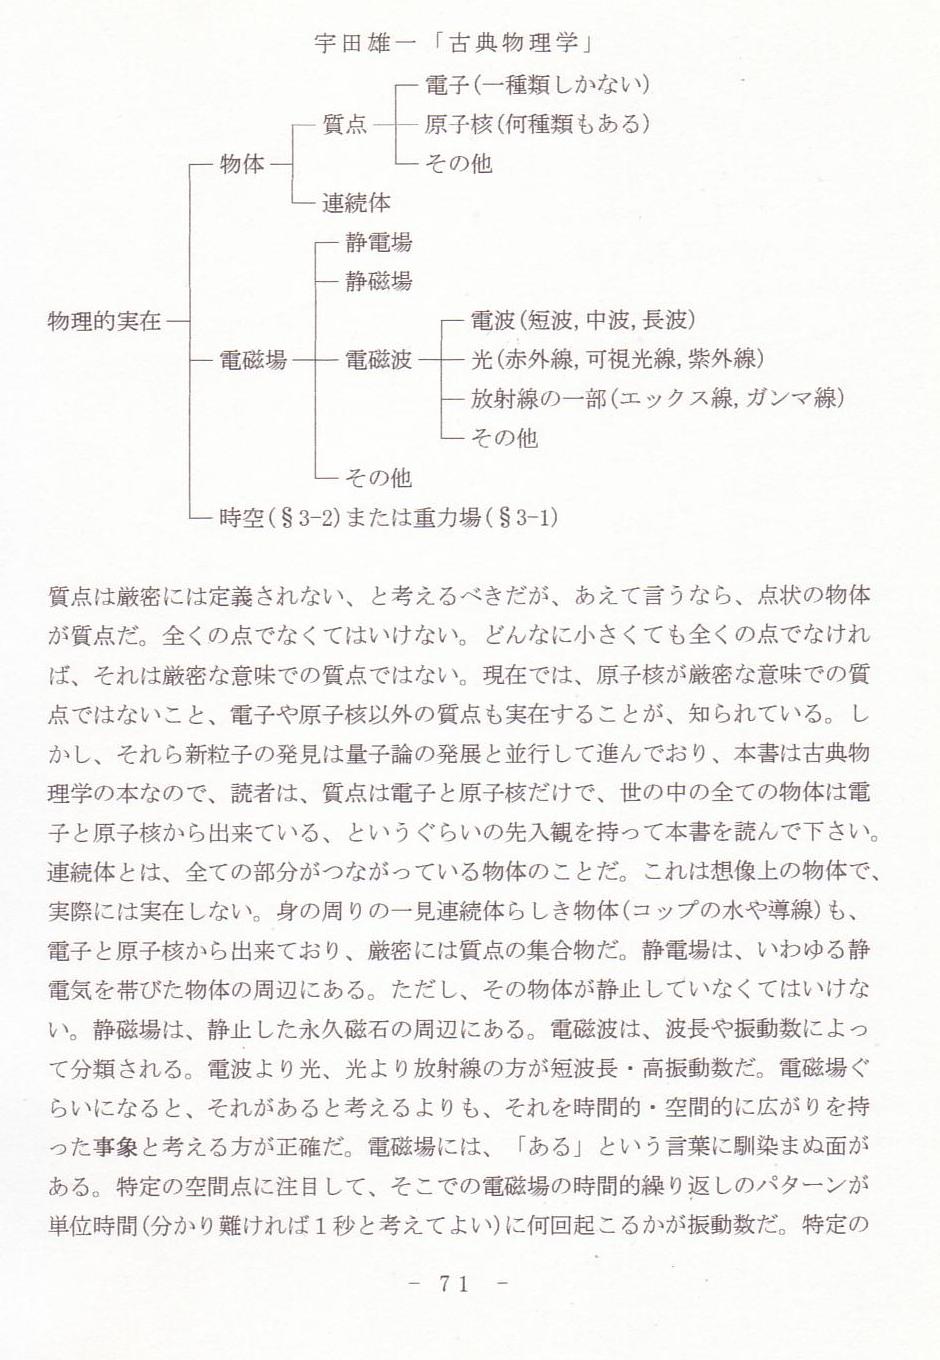 p71 宇田雄一「古典物理学」